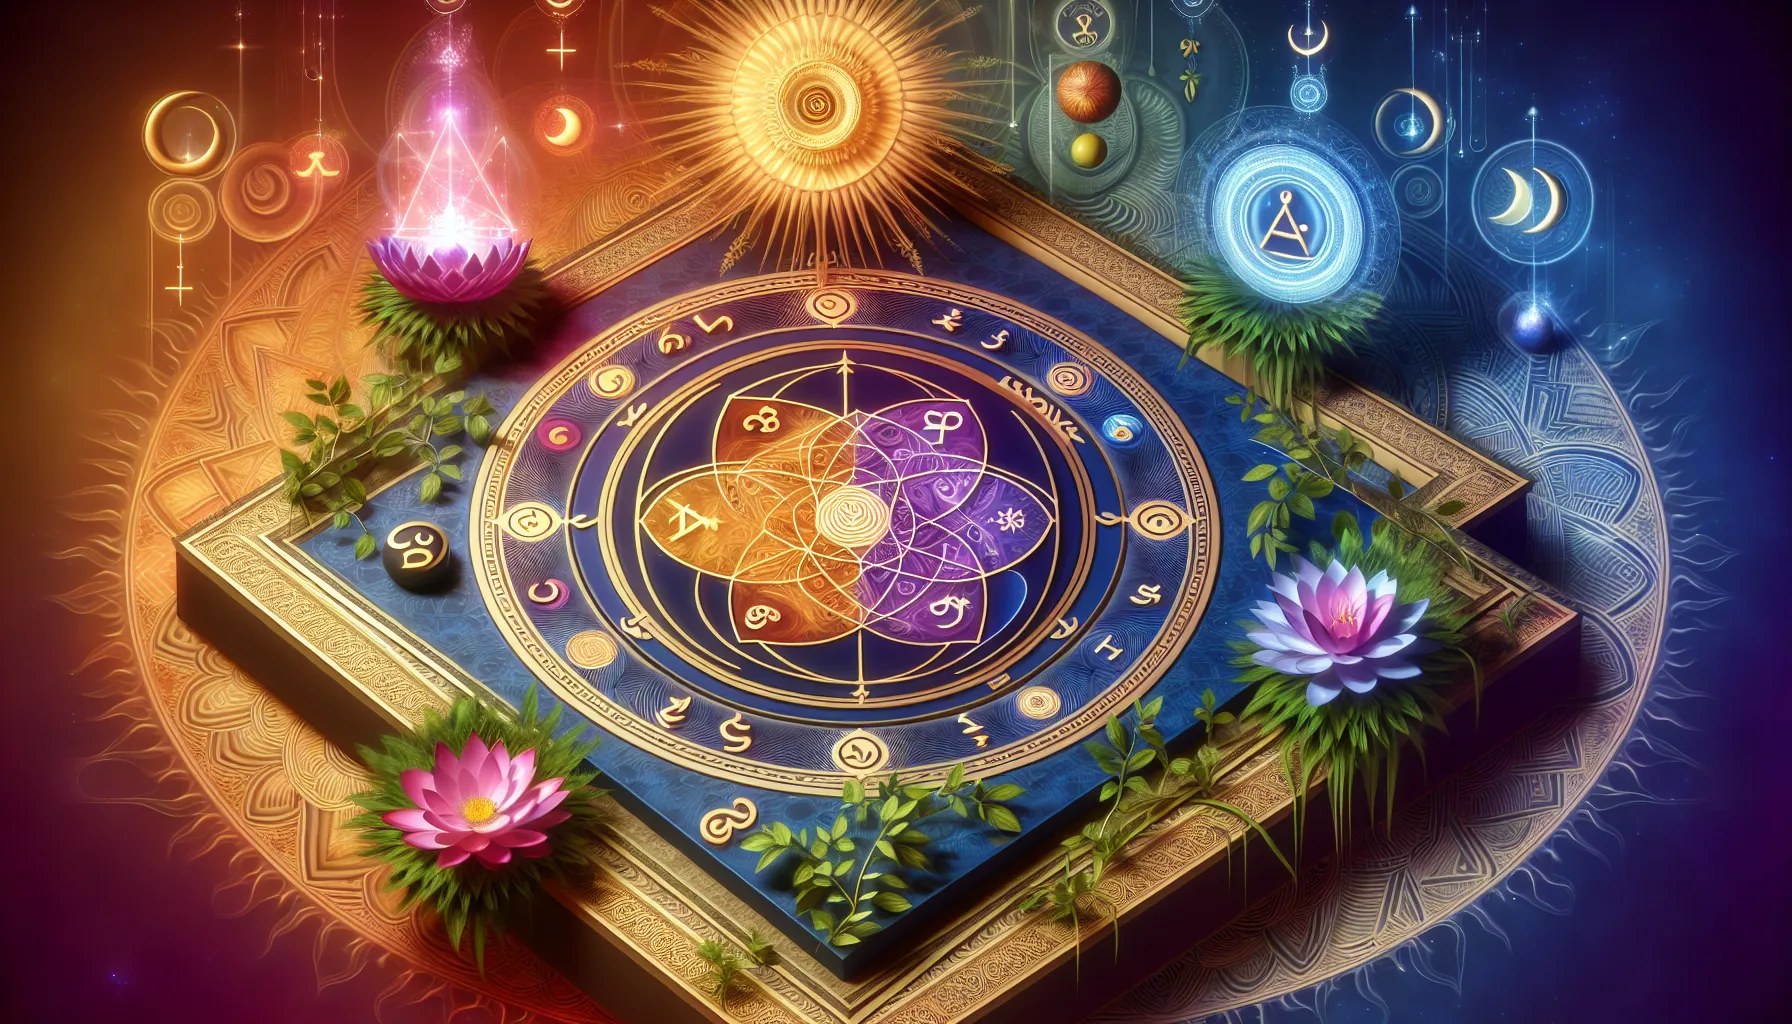 Imagen de las Cuatro Leyes Espirituales fundamentales representadas con símbolos espirituales y colores vibrantes.